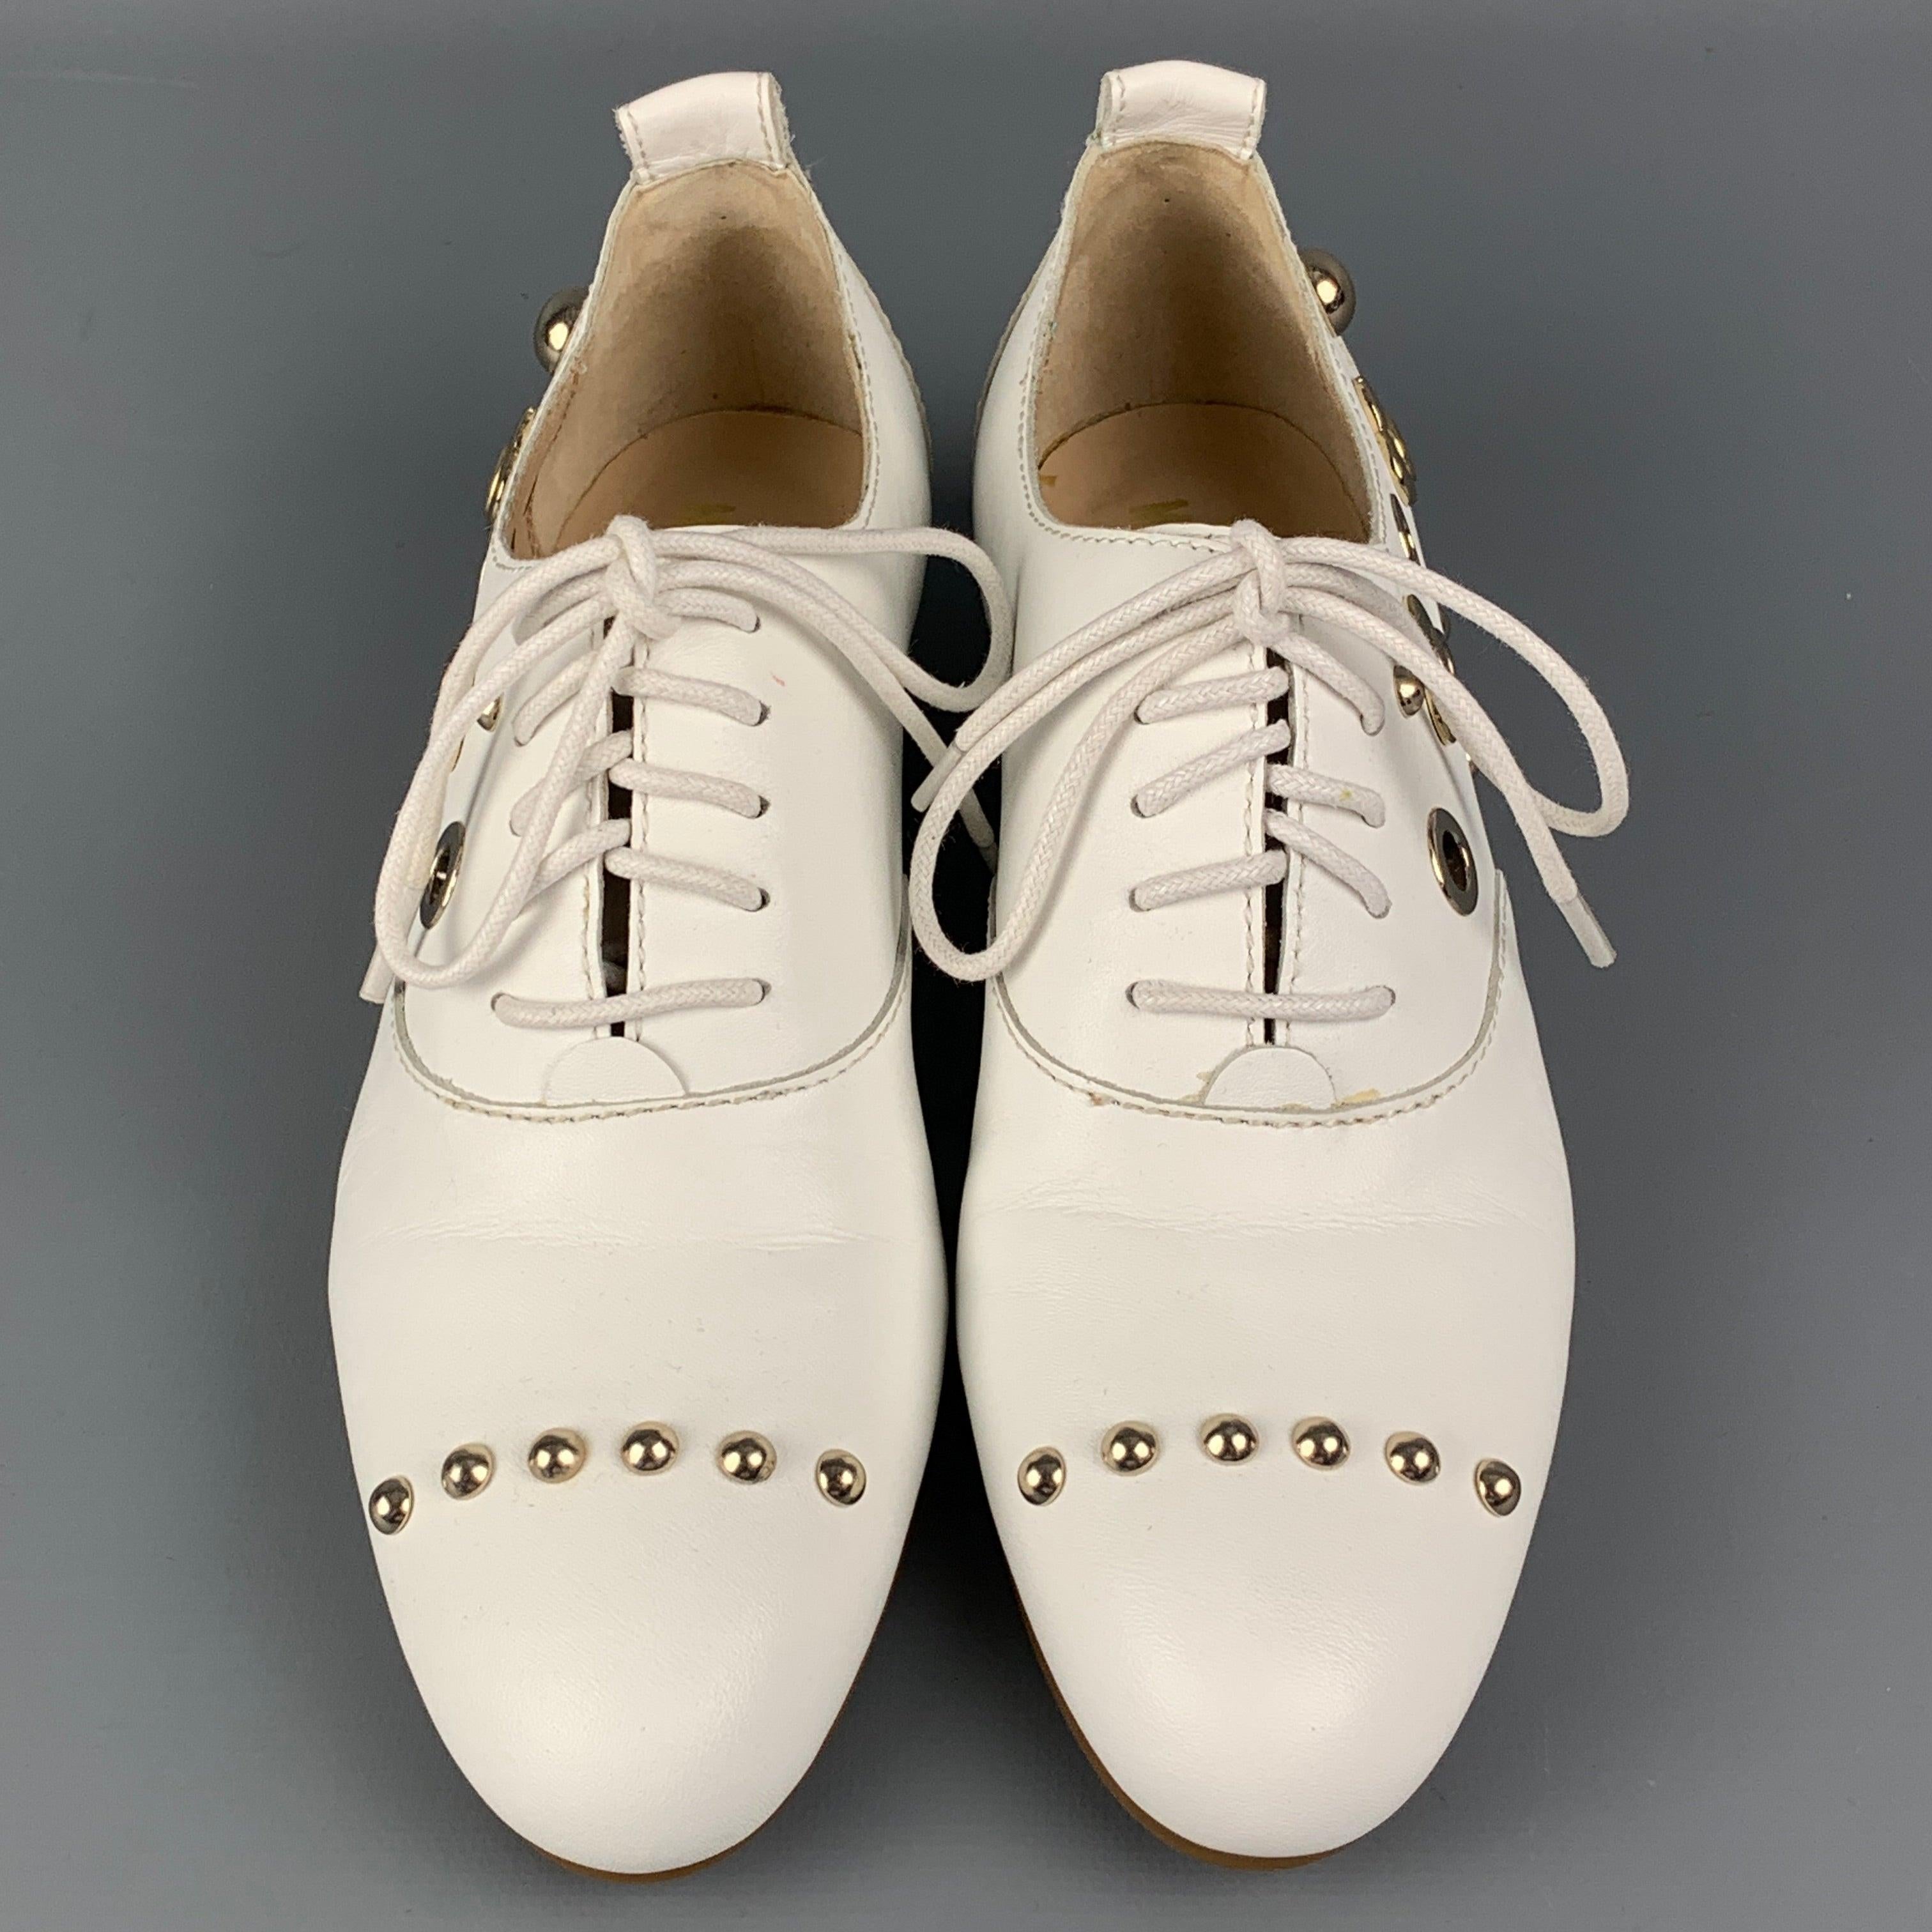 LOVE MOSCHINO - Chaussures plates cloutées en cuir blanc, taille 5,5 Pour femmes en vente